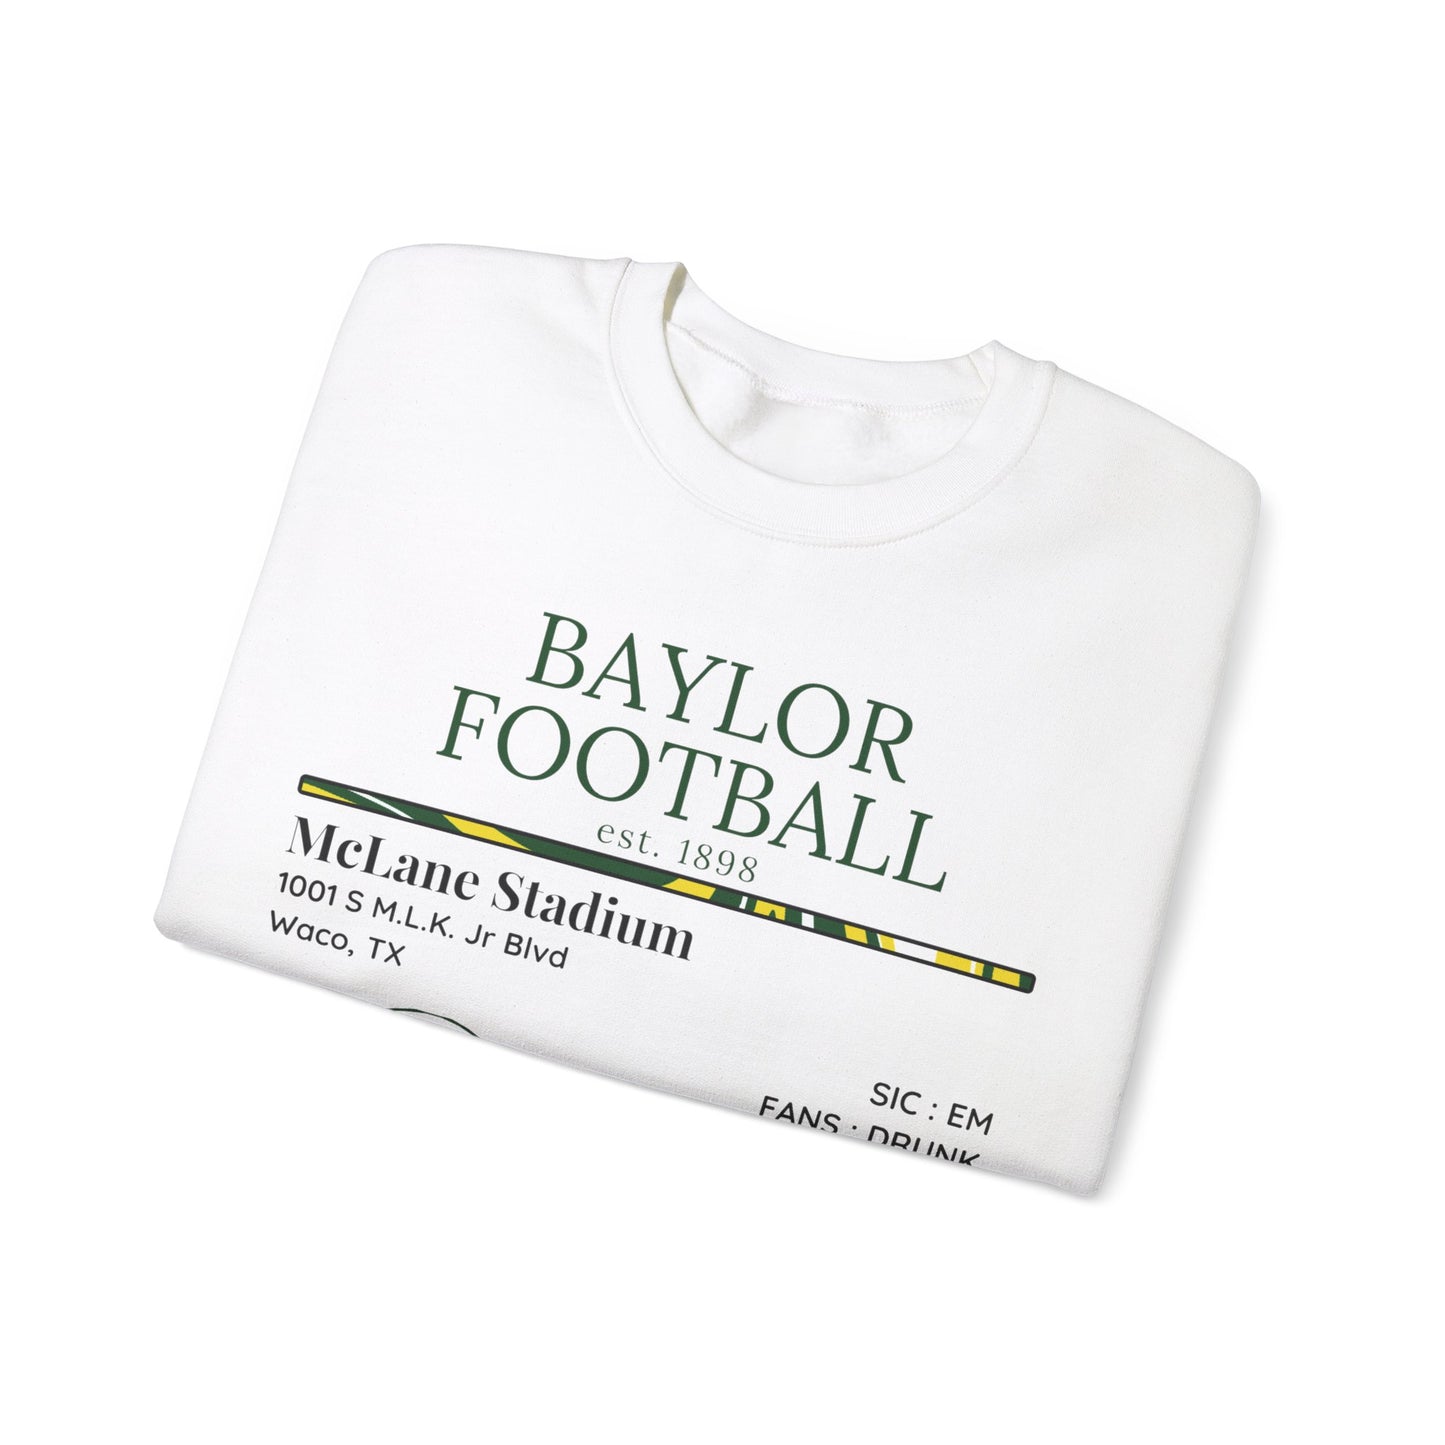 Baylor Football Sweatshirt